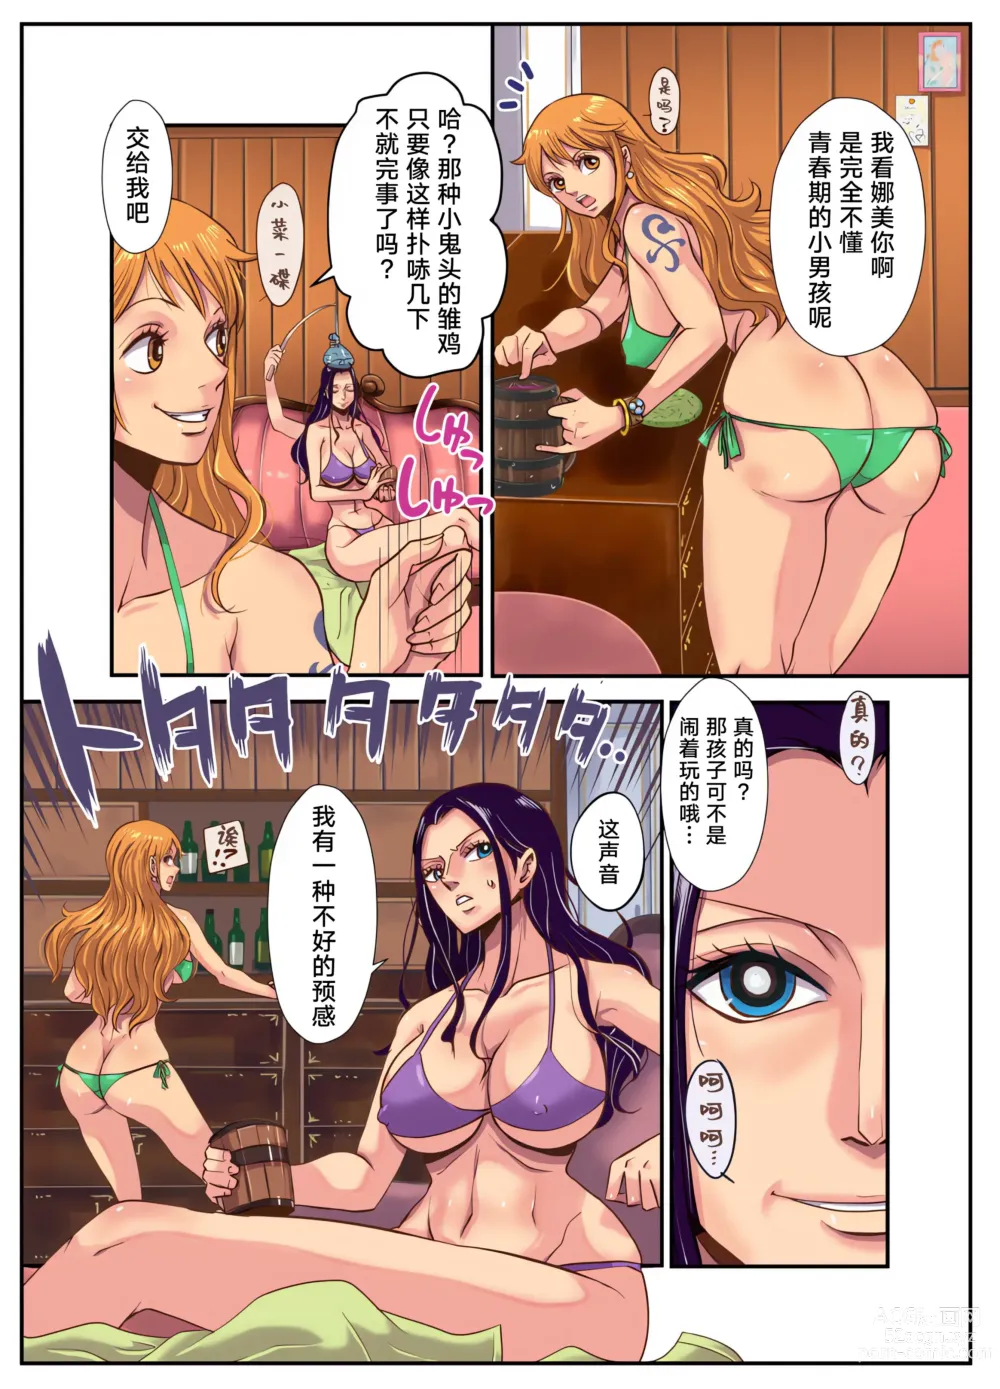 Page 6 of doujinshi CHOP STICK 2